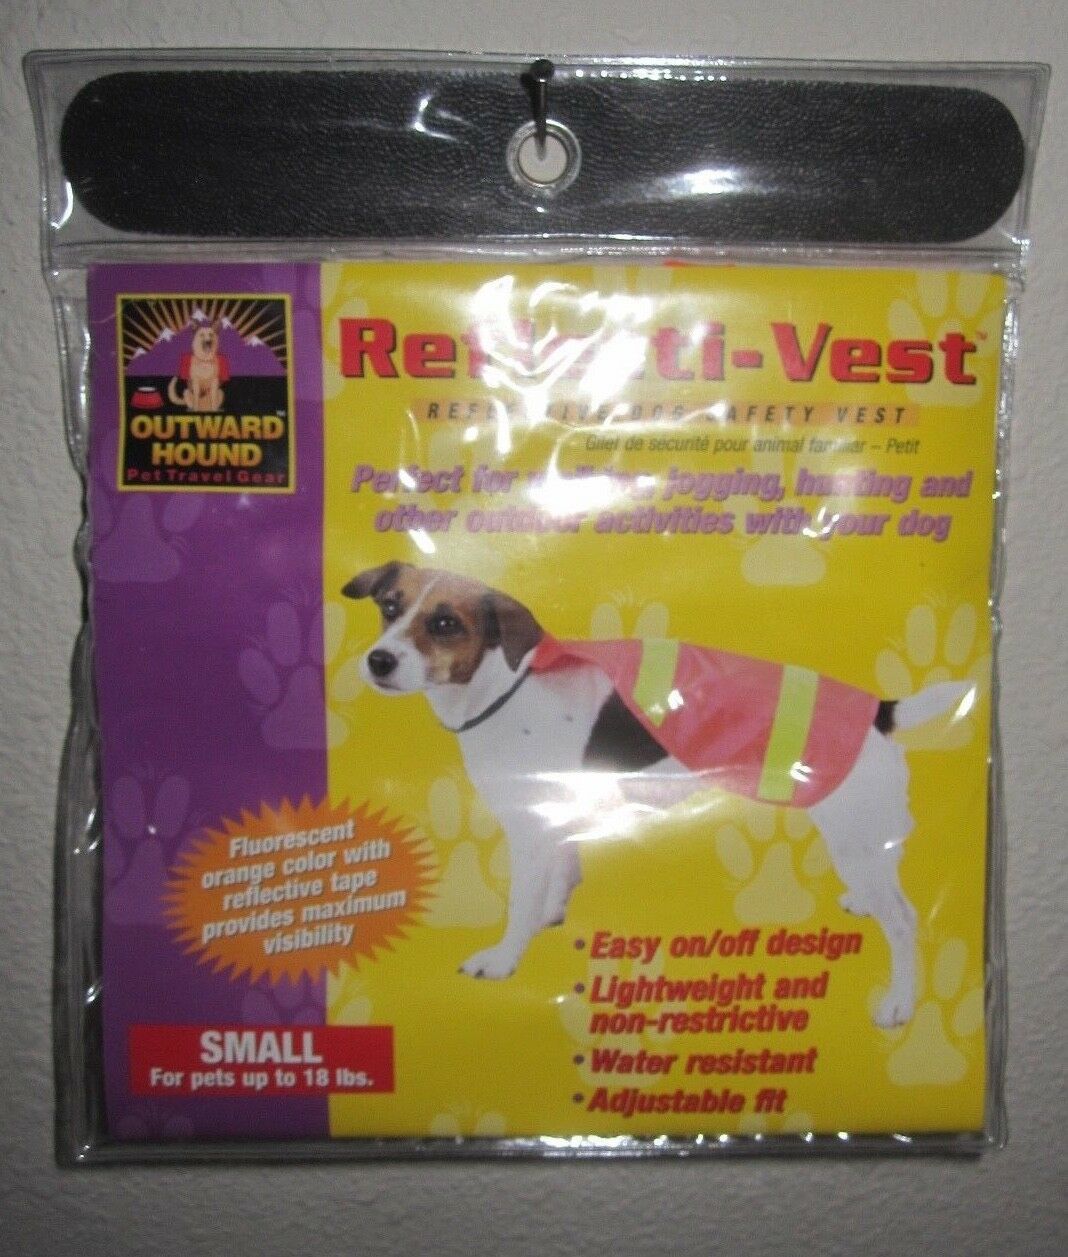 Reflective Dog Vest By Outward Hound Bright Orange Sz Small Safety Reflecti-vest